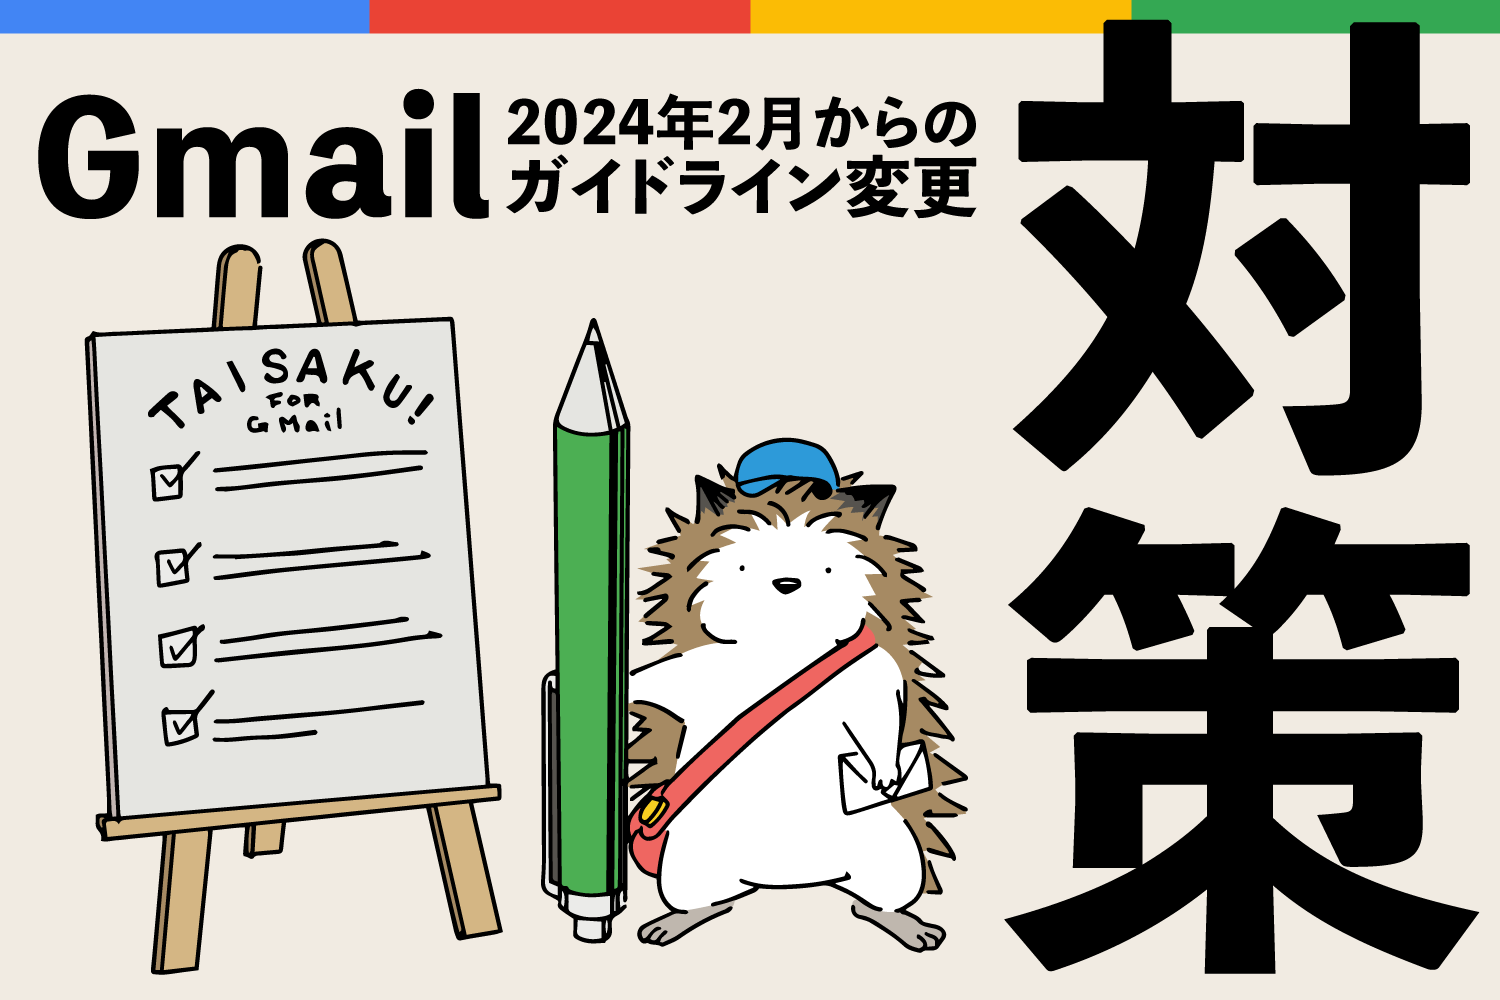 「Gmailへのメールが届かない！」がこれで解決！！
        原因から対応策まで解説します！
        